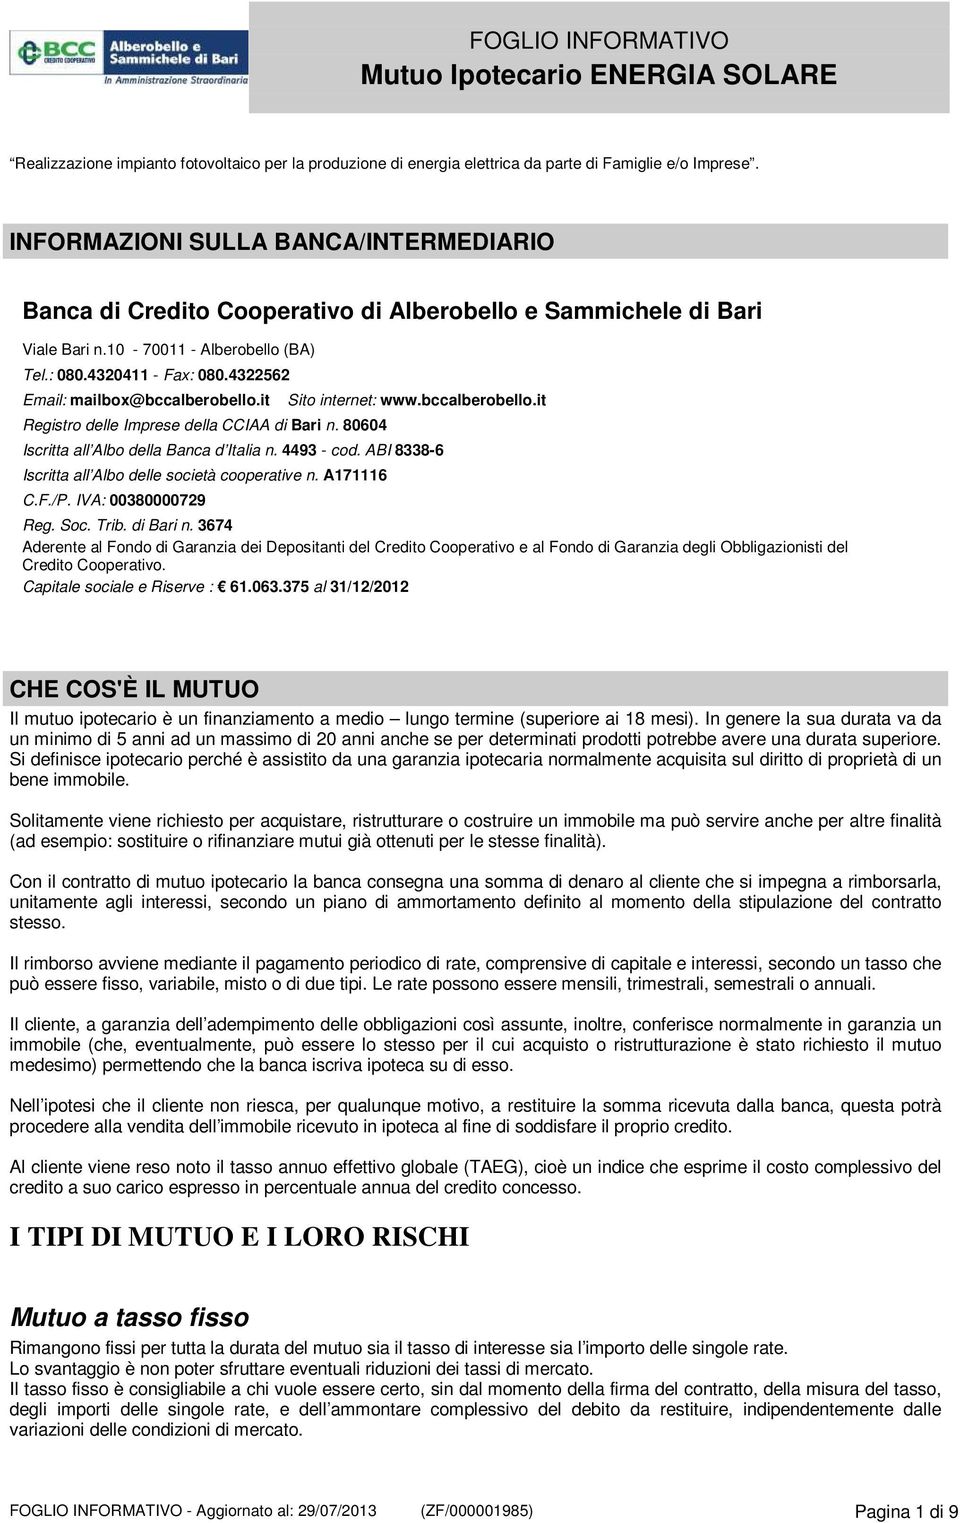 4322562 Email: mailbox@bccalberobello.it Registro delle Imprese della CCIAA di Bari n. 80604 Sito internet: www.bccalberobello.it Iscritta all Albo della Banca d Italia n. 4493 - cod.